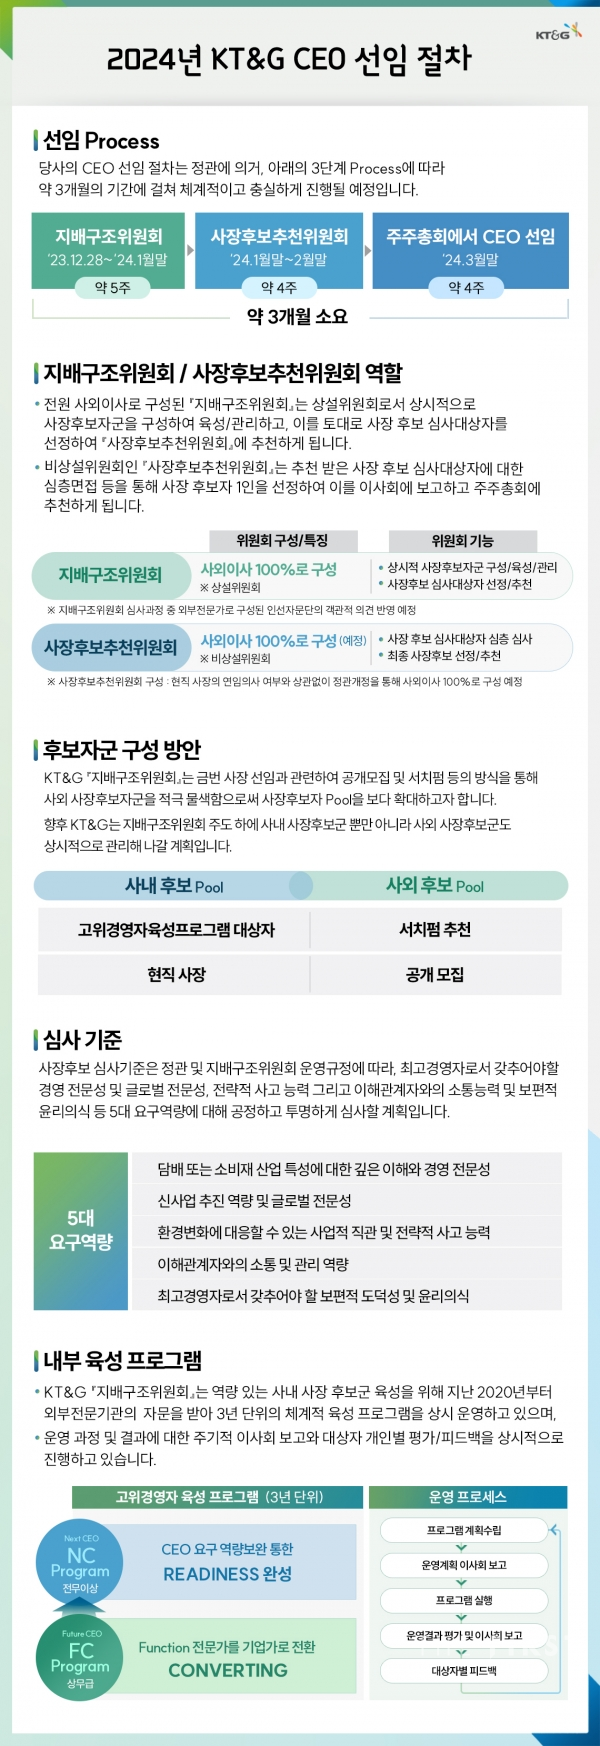 KT&G 이사회, 차기 사장 선임 절차 본격 가동… 28일부터 사장 후보 공개 모집